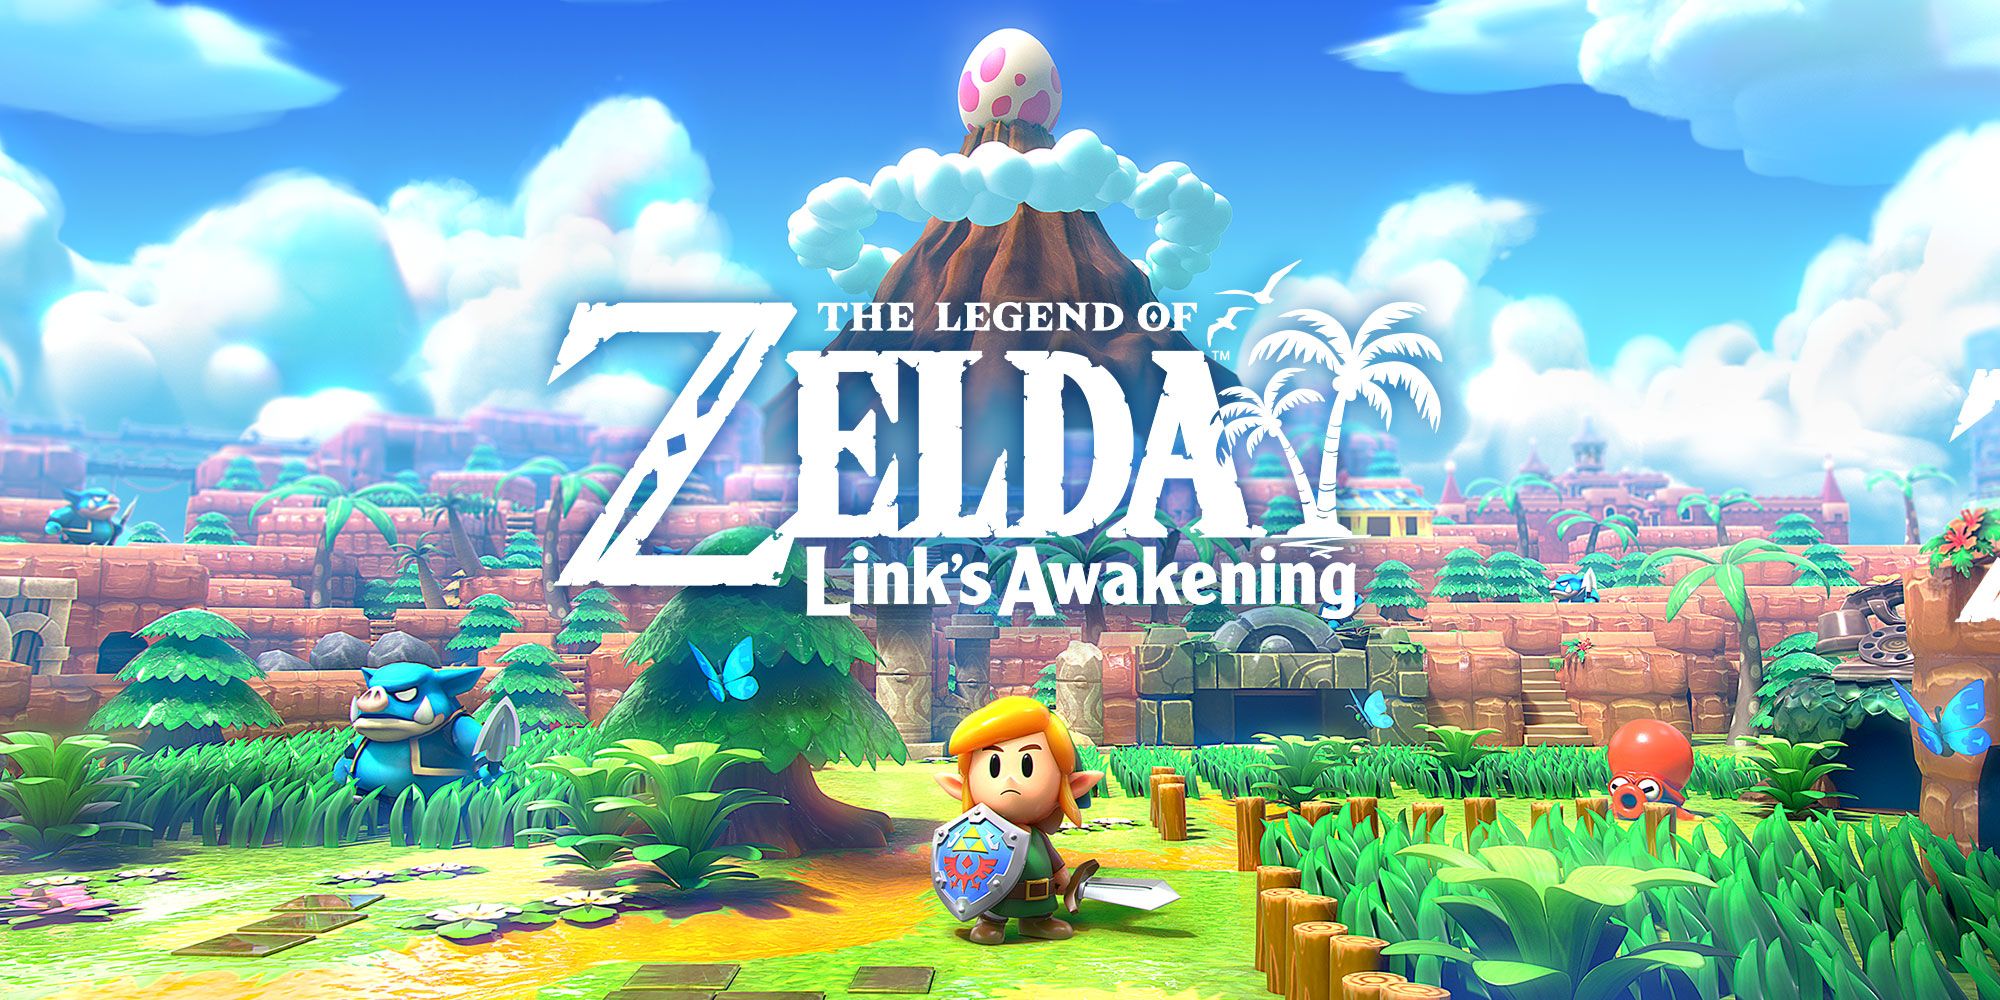 Nintendo legend-of-zelda-links-awakening